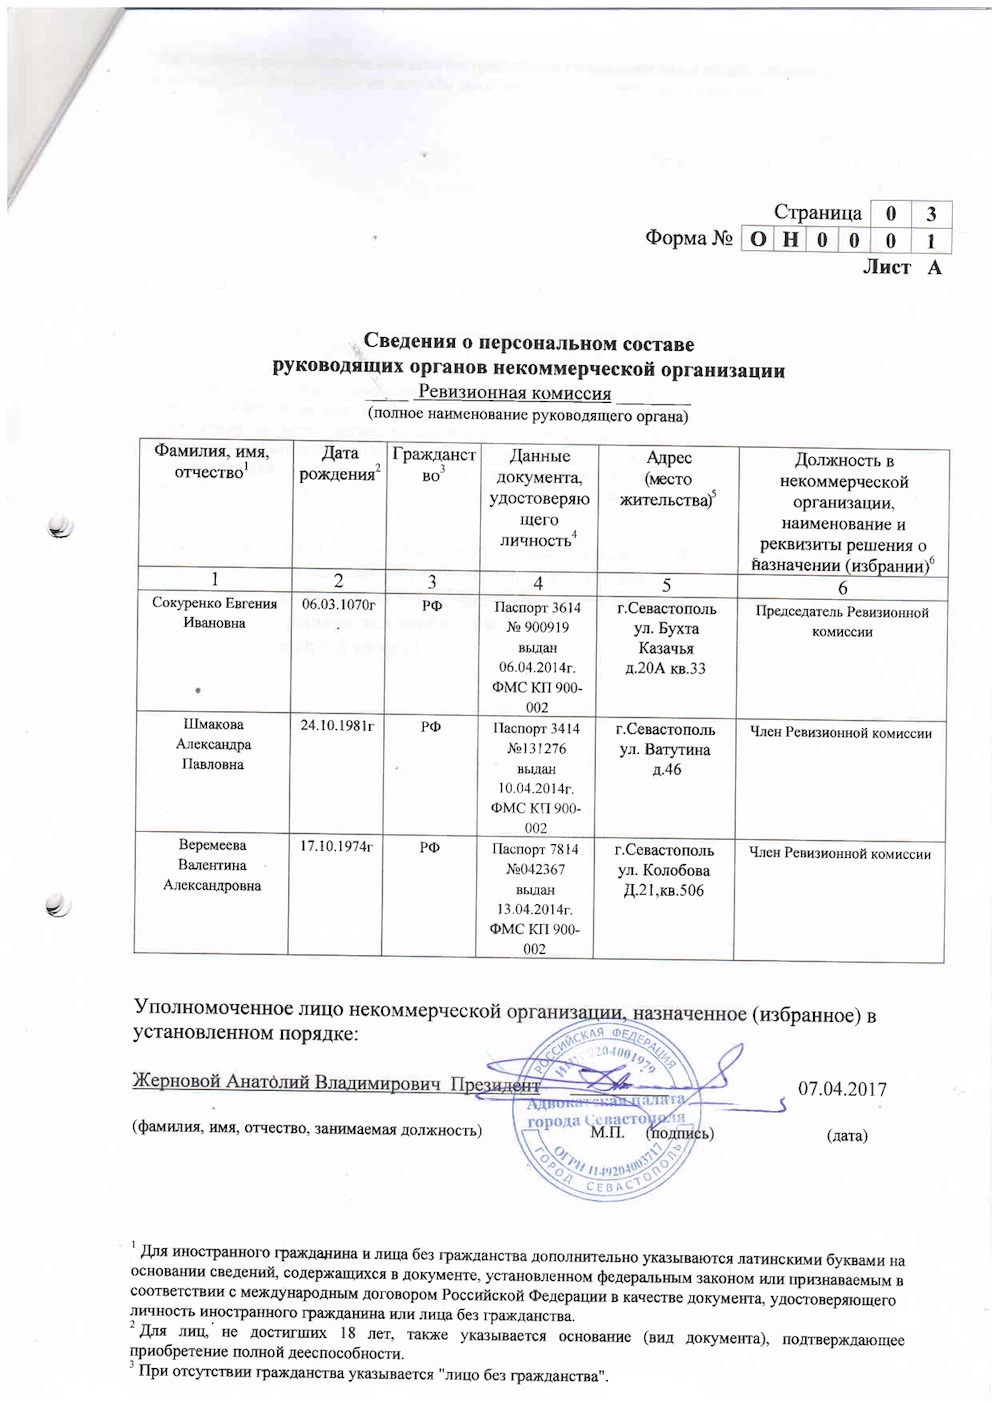 Уведомления, отчеты Адвокатской Палаты в Минюст за 2016 год